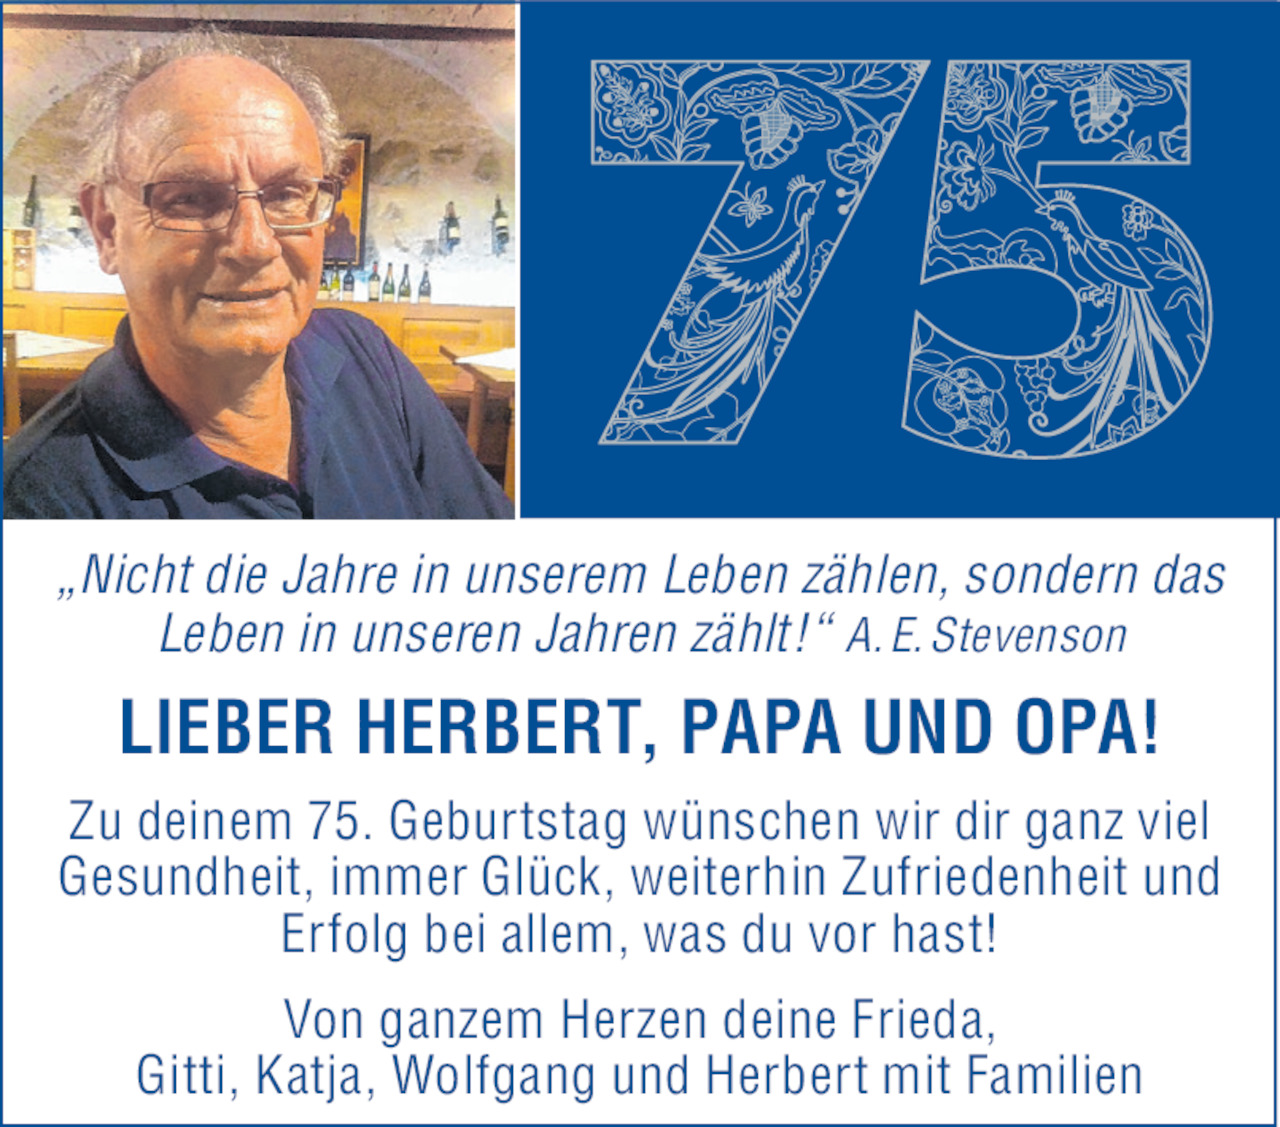 Herzlichkeit Von Herbert 75 Geburtstag Vom 23 11 19 Tiroler eszeitung Online